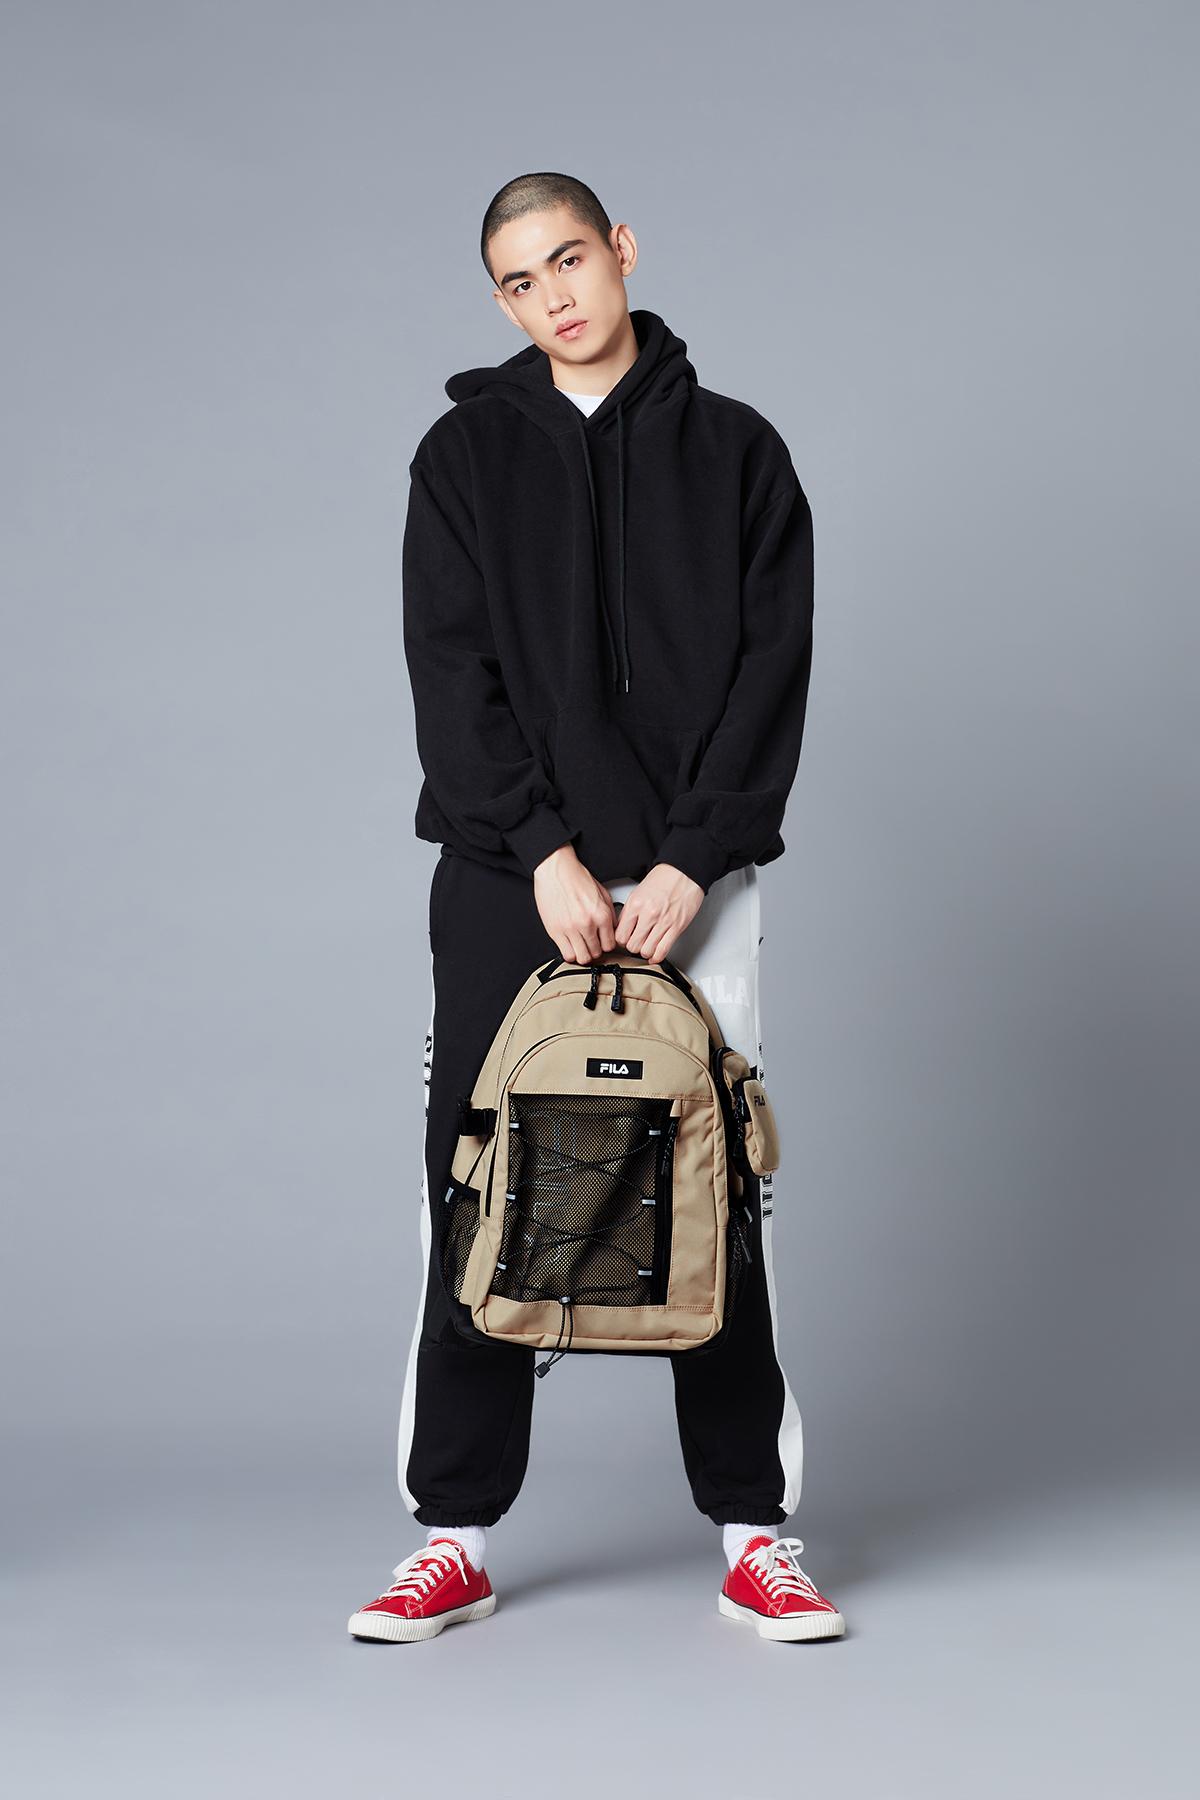 fila korea T-Pack 21 Backpack (true beige) held by handle by model